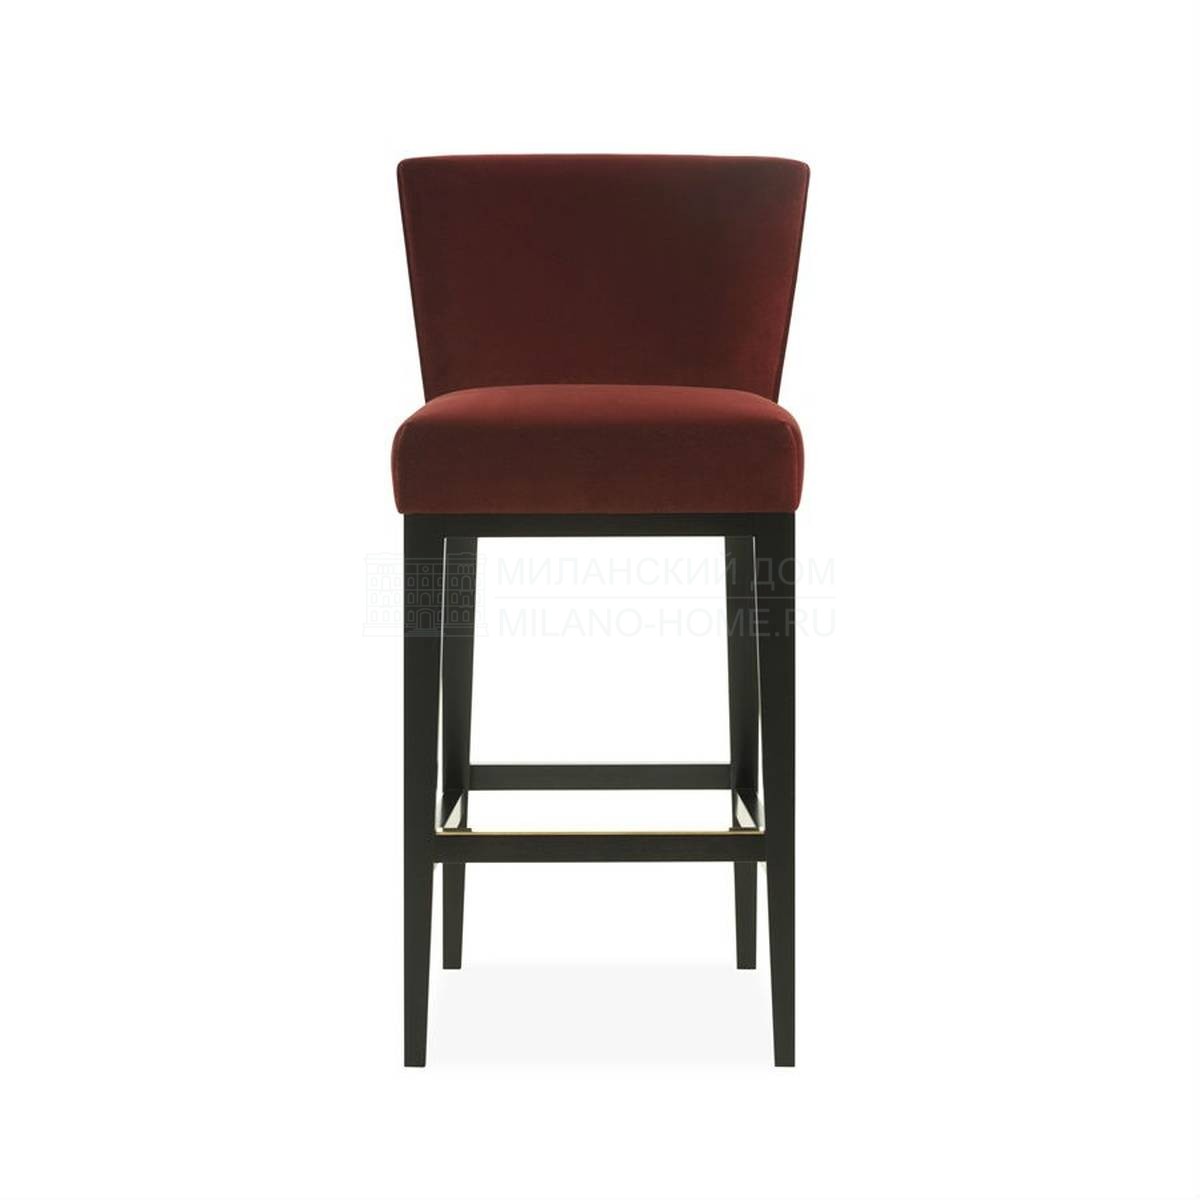 Барный стул Grayson bar stool из Великобритании фабрики THE SOFA & CHAIR Company